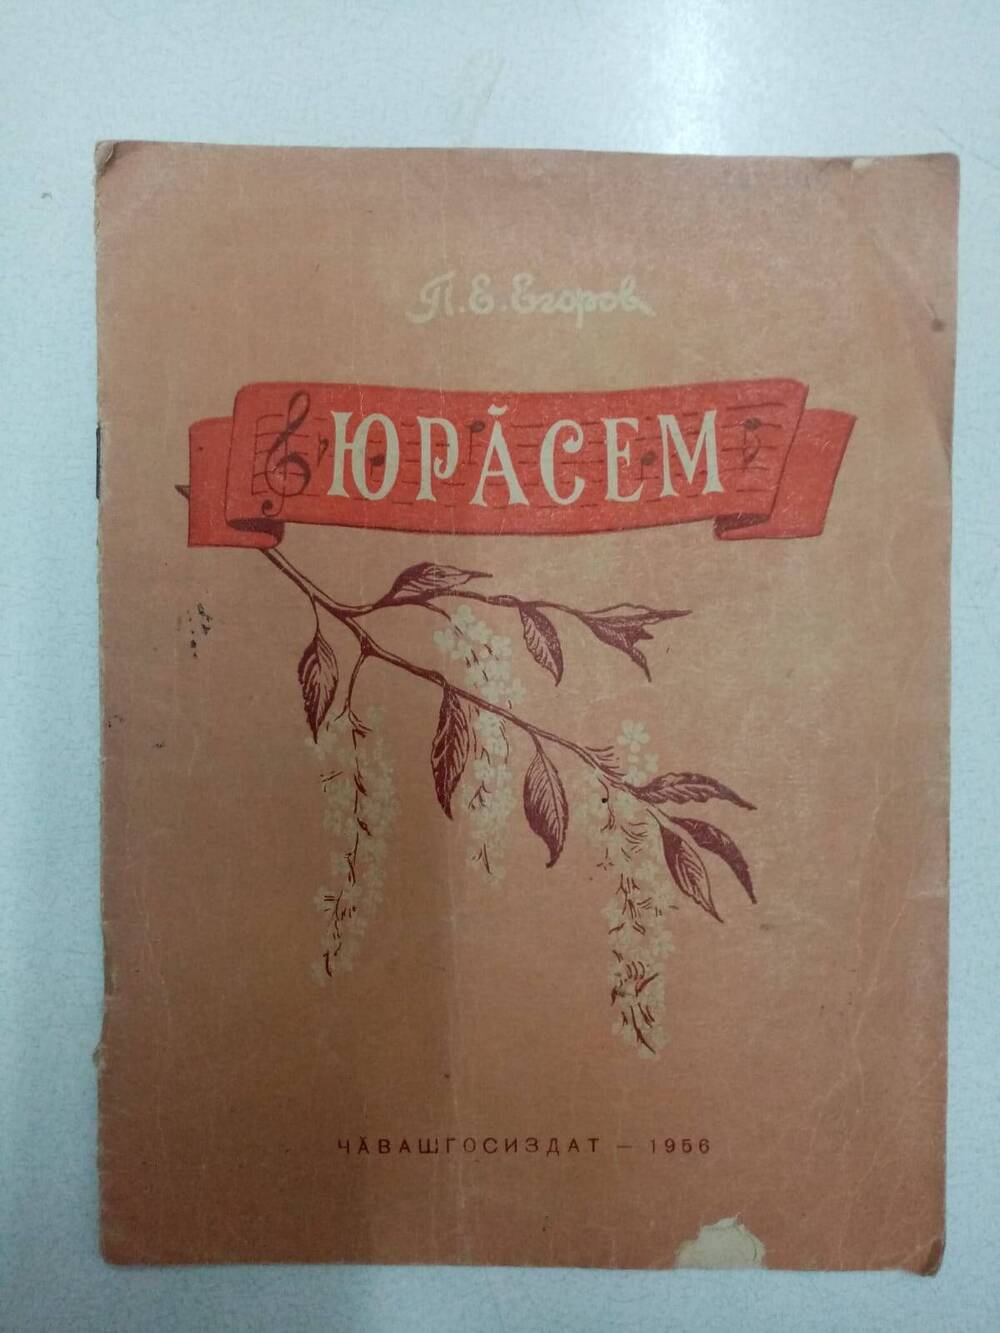 Книга П.Е.Егоров Юрăсем (Песни)